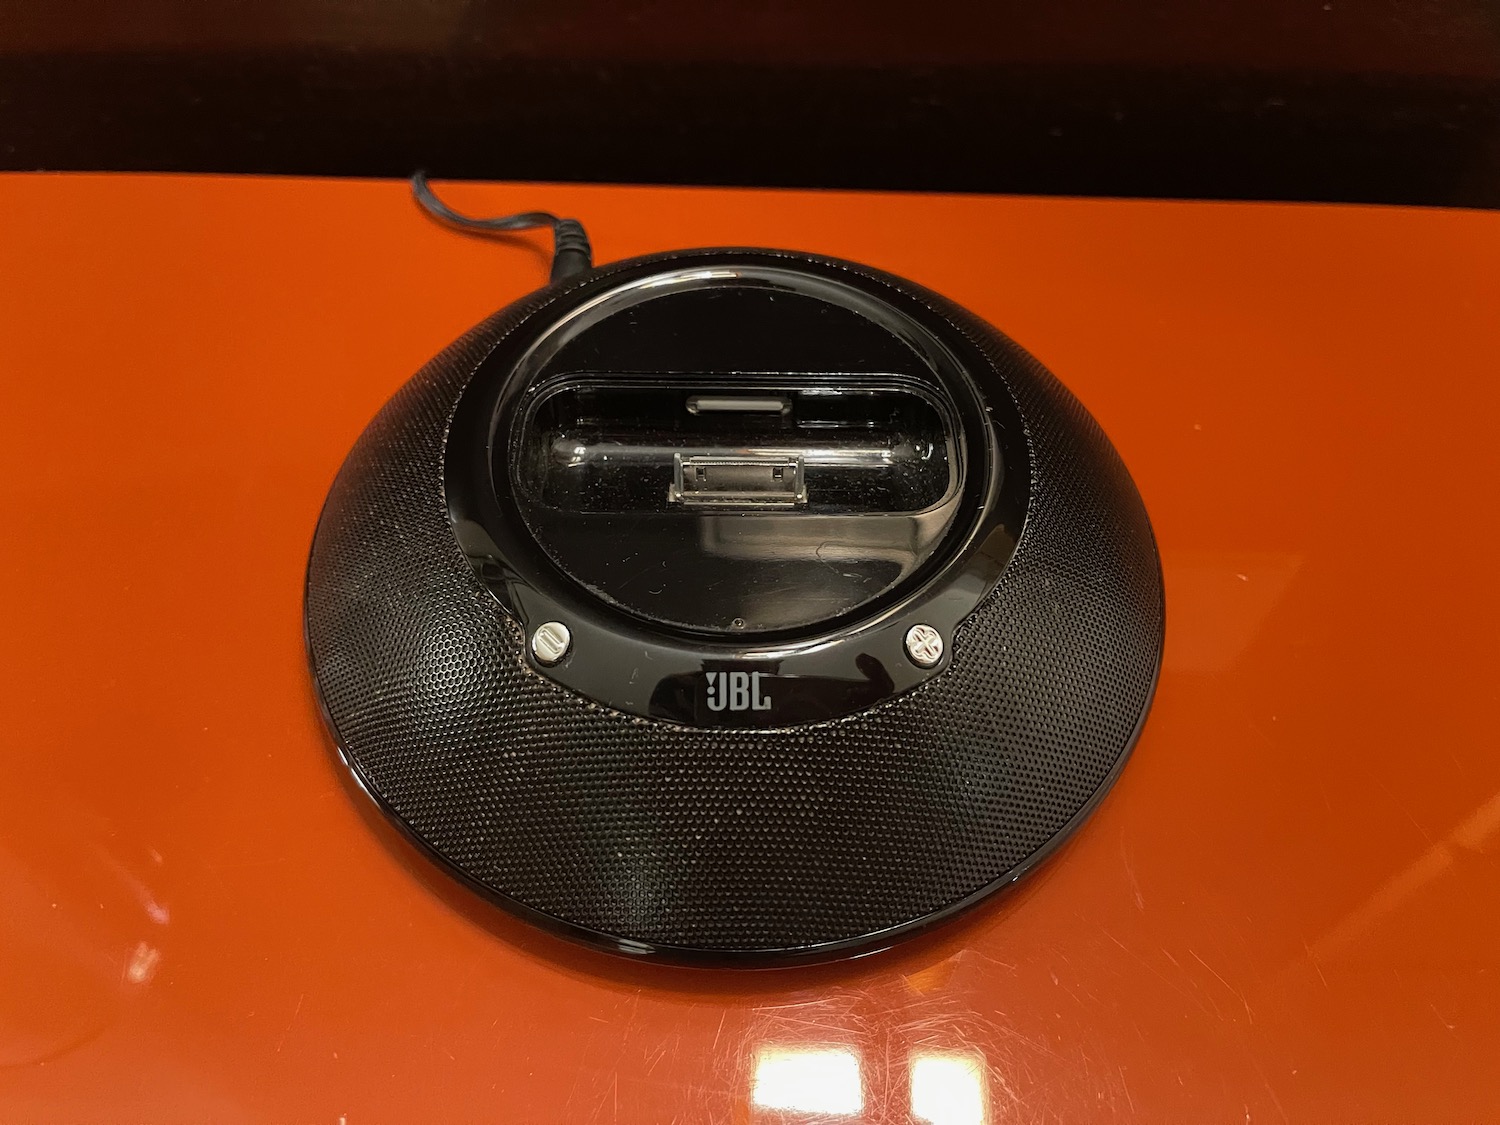 a black speaker on a orange surface